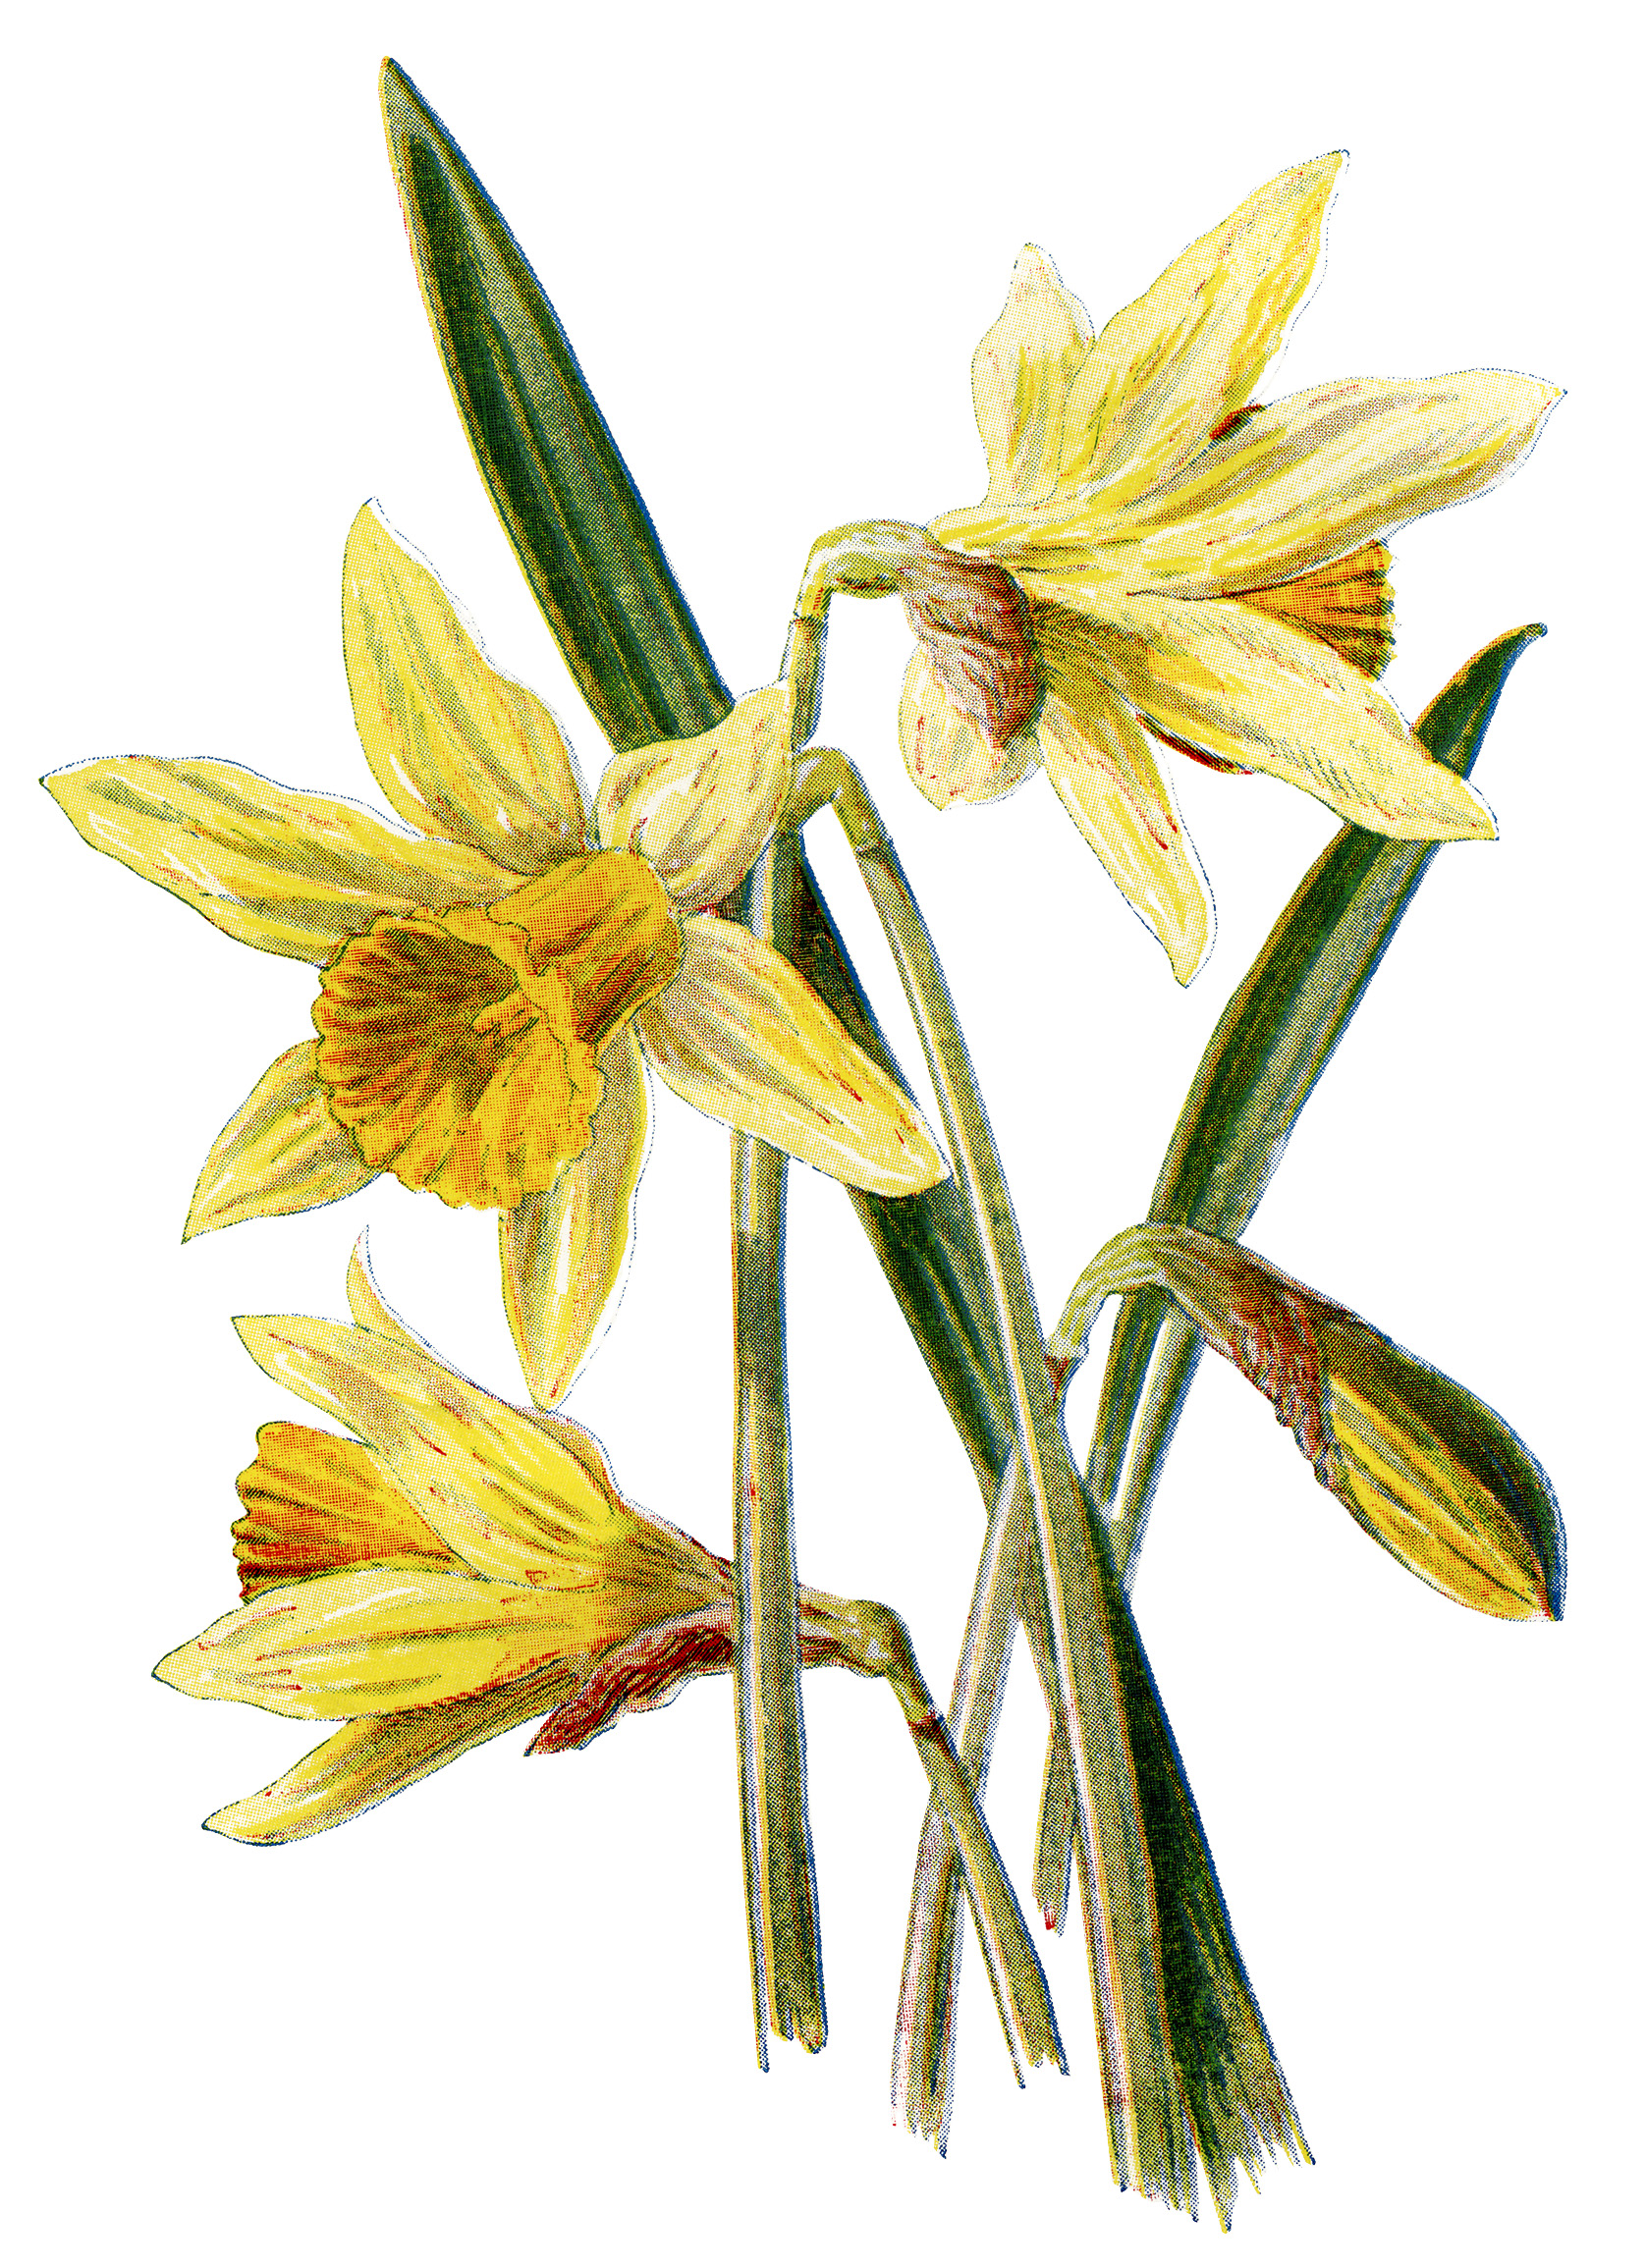 daffodil clip art, vintage flower illustration, yellow spring flower, daffodil botanical drawing, Frederick Edward Hulme